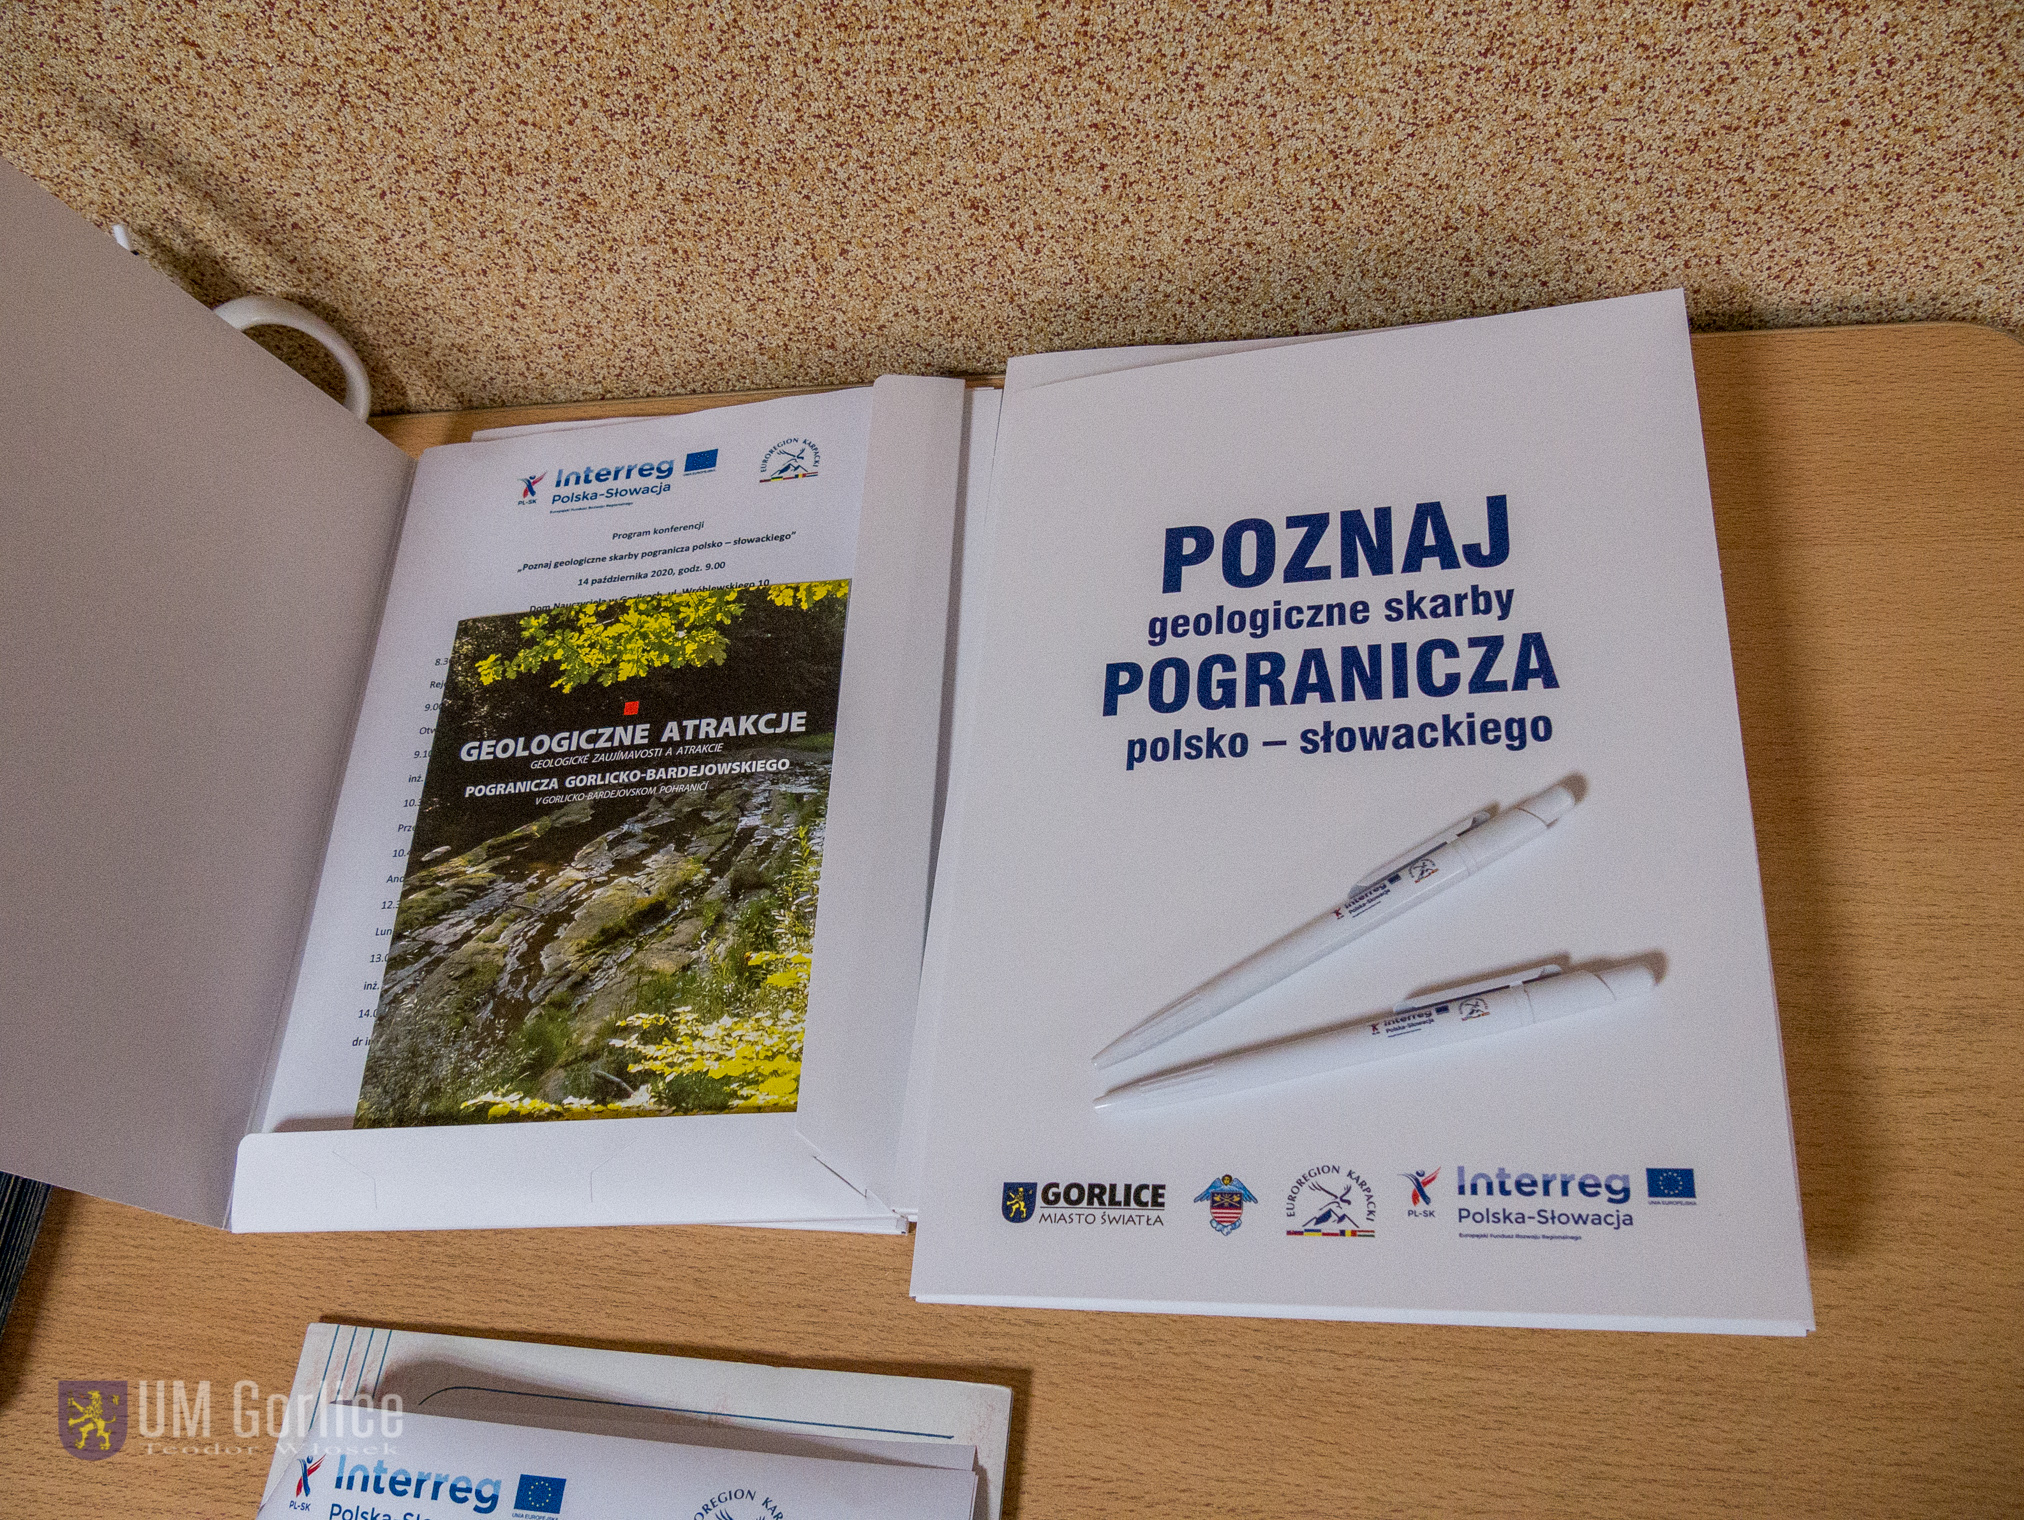 Konferencja „Poznaj geologiczne skarby pogranicza polsko – słowackiego” - materiały konferencyjne